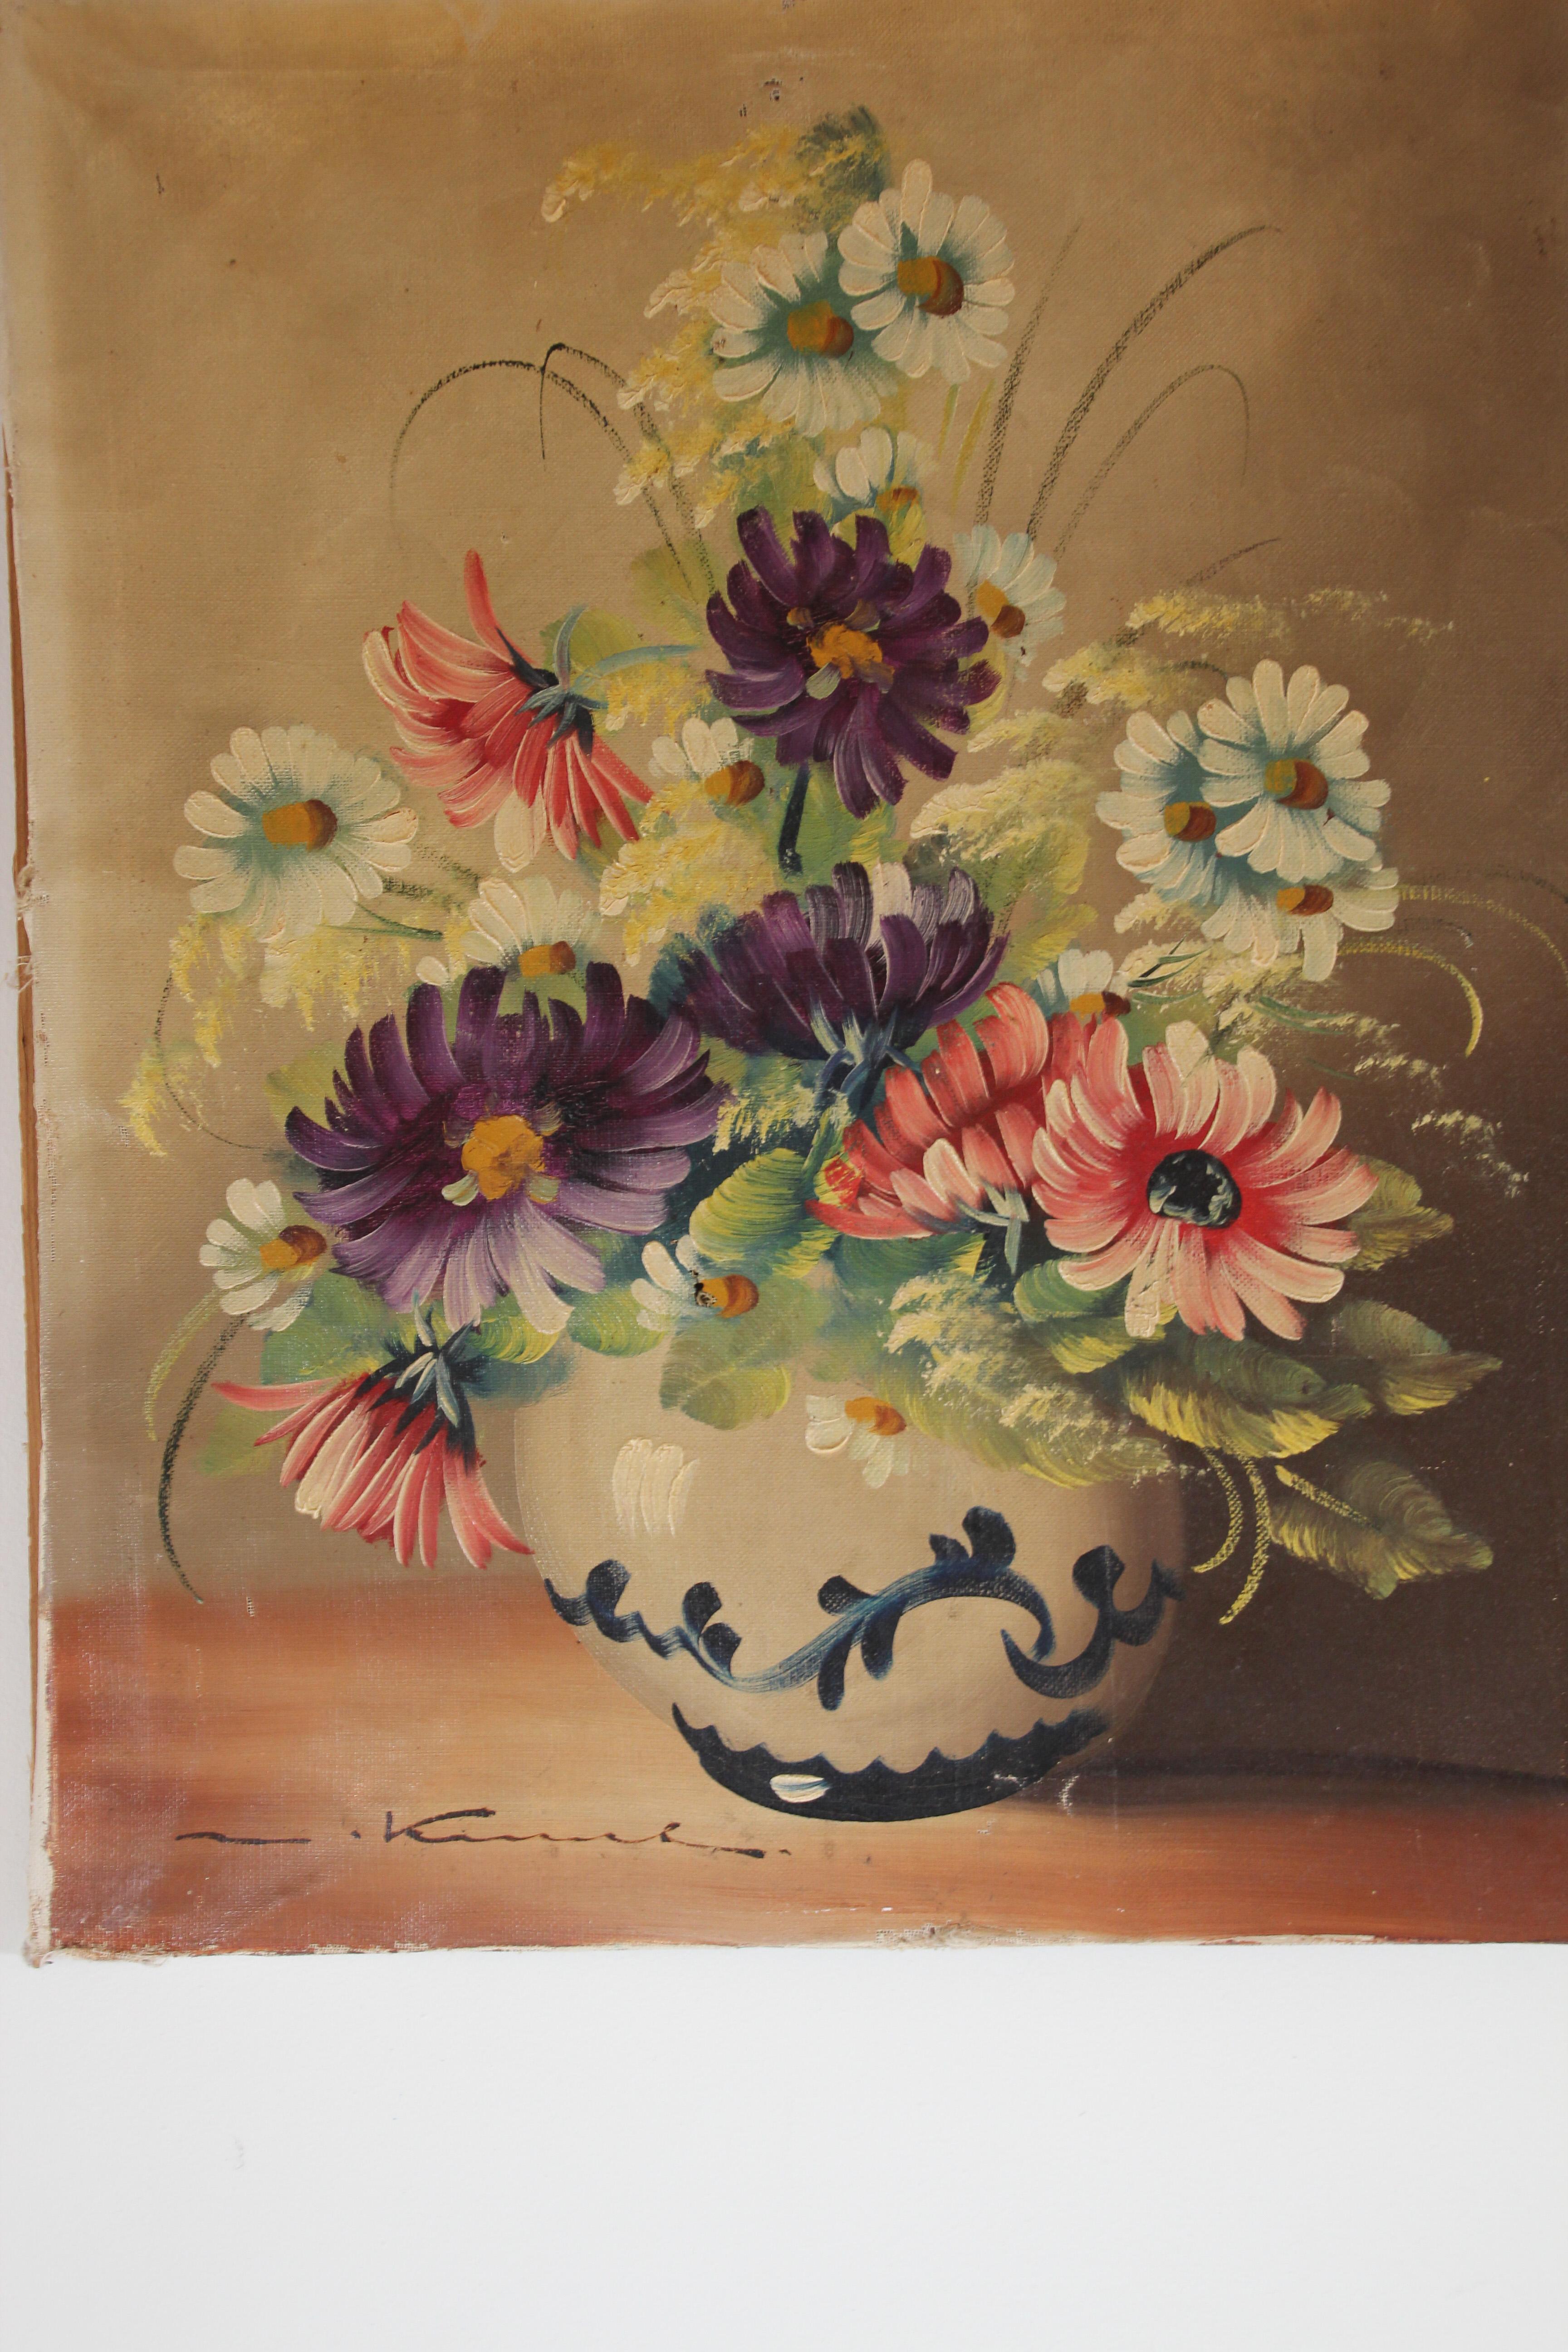 Anfang bis Mitte des 20. Jahrhunderts französisches Ölgemälde auf Leinwand mit Blumen in einer Vase. 
Sehr schön gemaltes Stillleben aus dem frühen 20. Jahrhundert, vom Künstler signiert.
Nicht gerahmt, nur auf Leinwand gespannt.